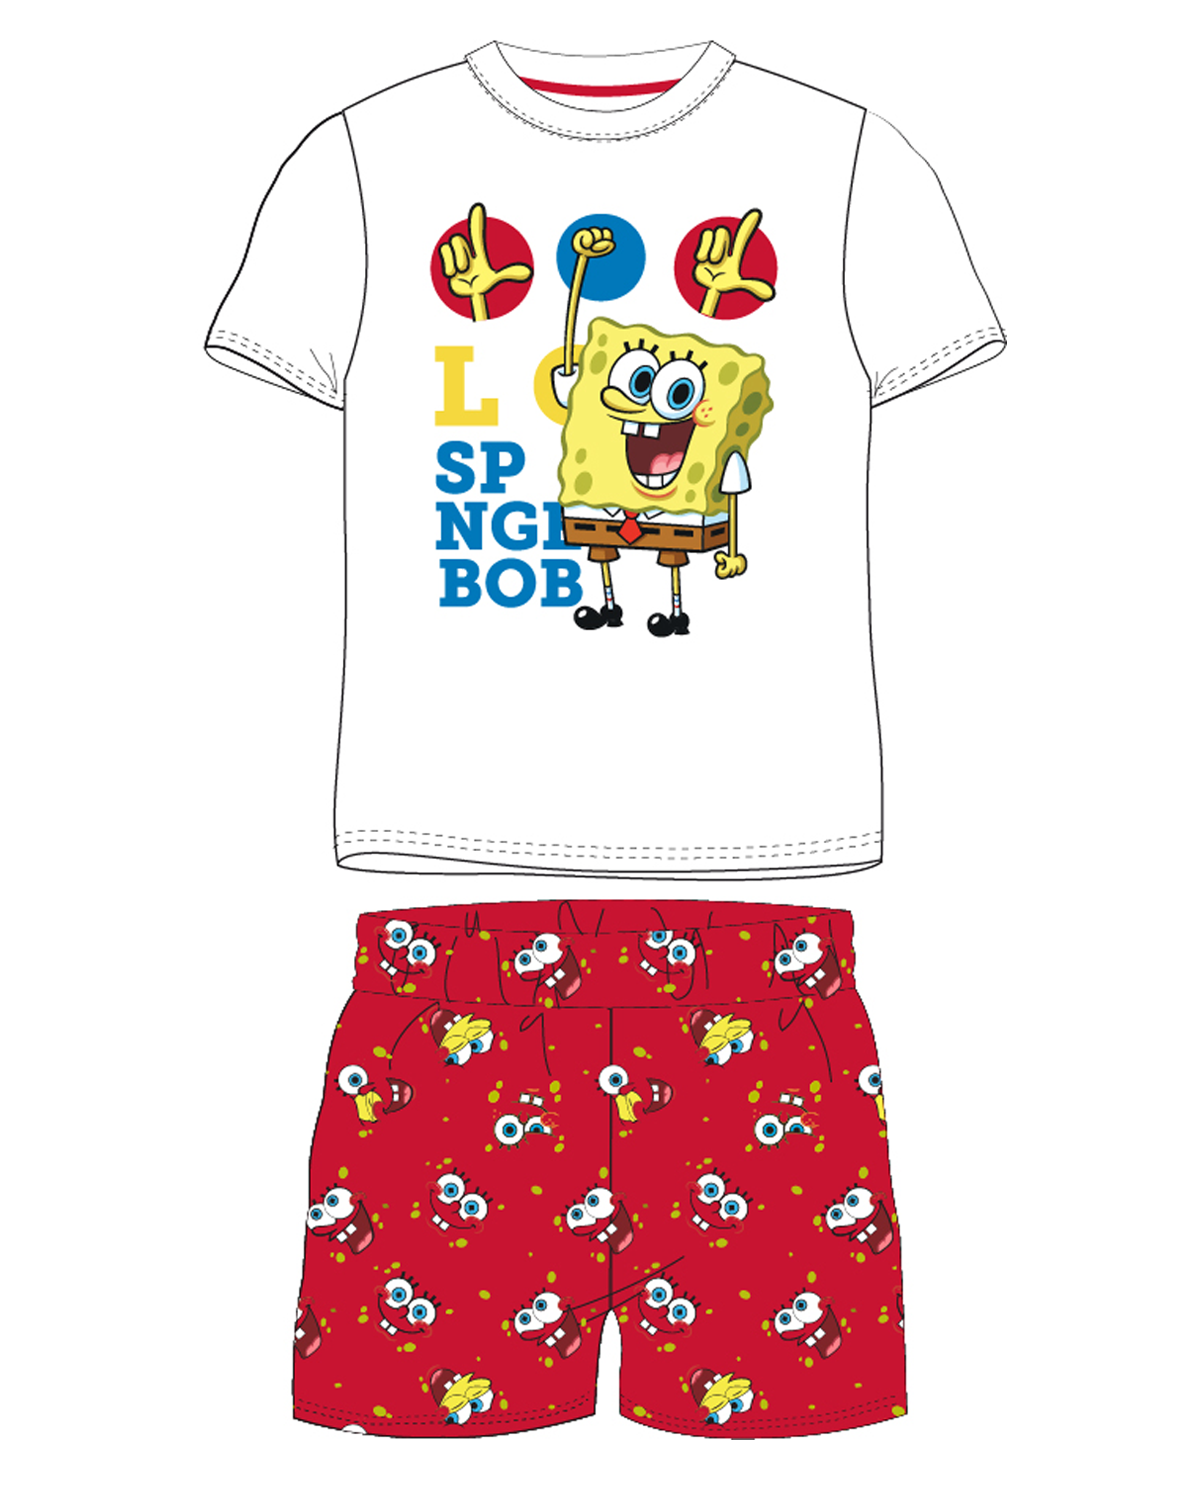 SpongeBob v kalhotách - licence Chlapecké pyžamo - SpongeBob v kalhotách 5204203W, bílá / červená Barva: Mix barev, Velikost: 128